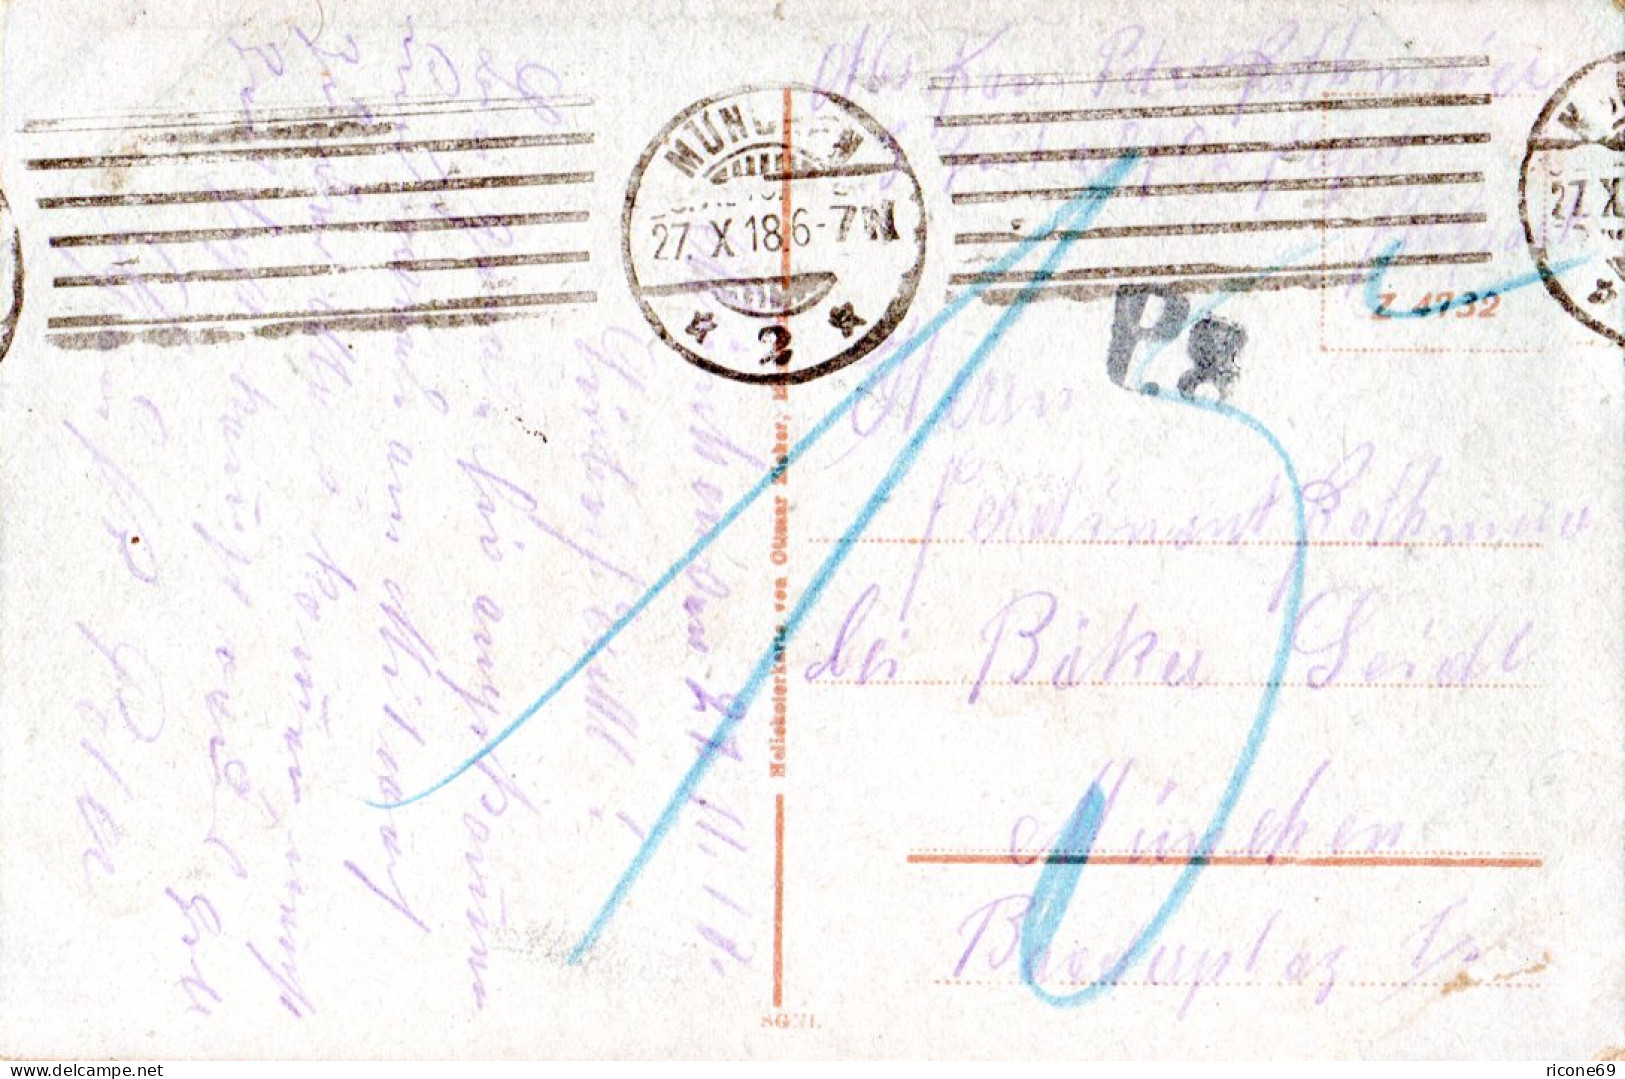 München, Gruß Vom Salvatorkeller, 1918 Gebr. Farb-AK M. Portostempel P.8 - Lettres & Documents